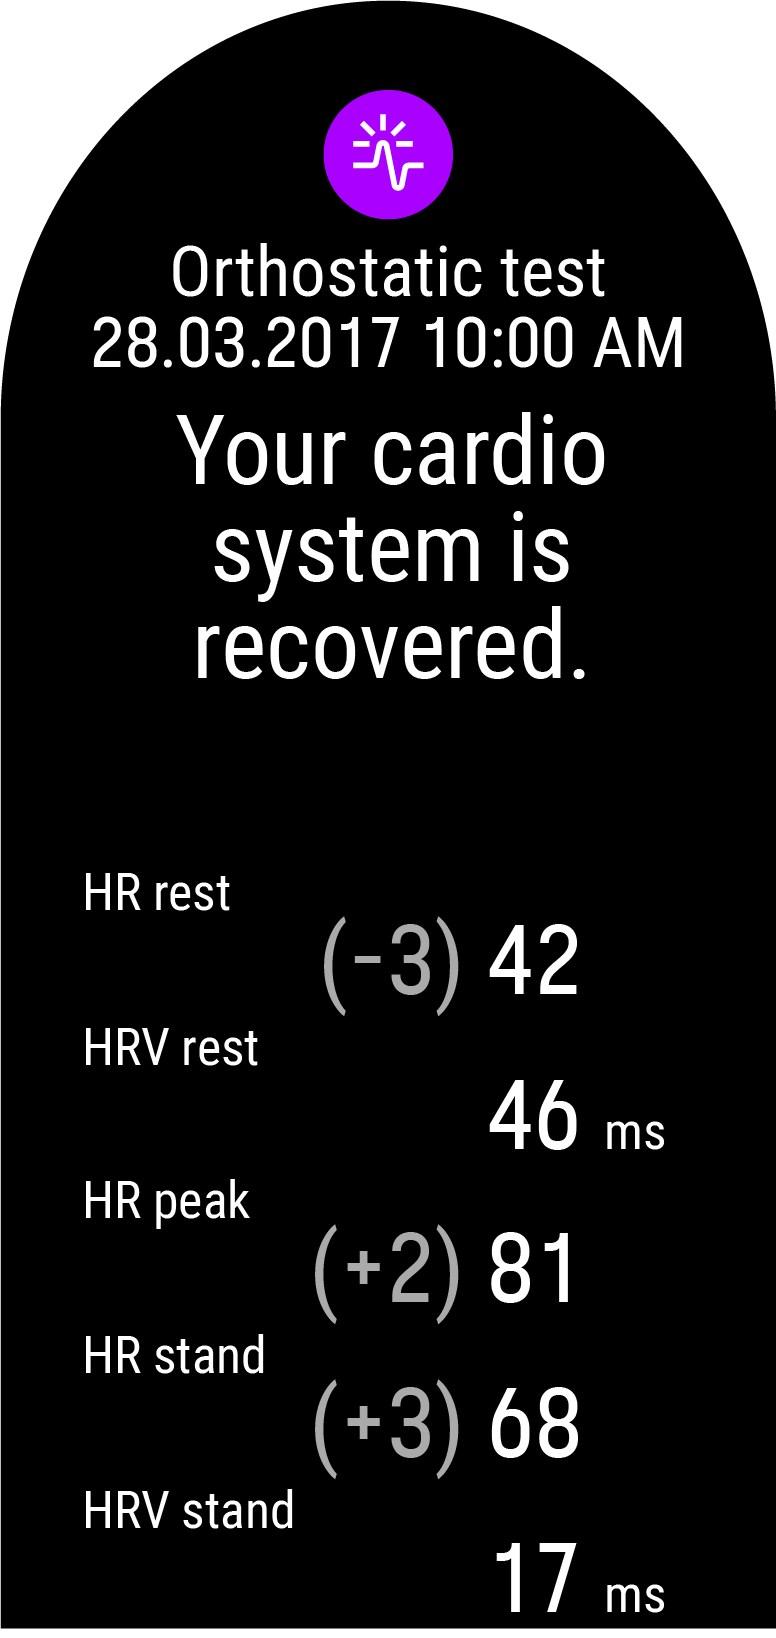 HF rust: Gemiddelde hartslag tijdens liggen HSV rust (RMSSD rust): Hartslagvariatie tijdens liggen HF piek: De hoogste hartslag die optreedt nadat je bent gaan staan.